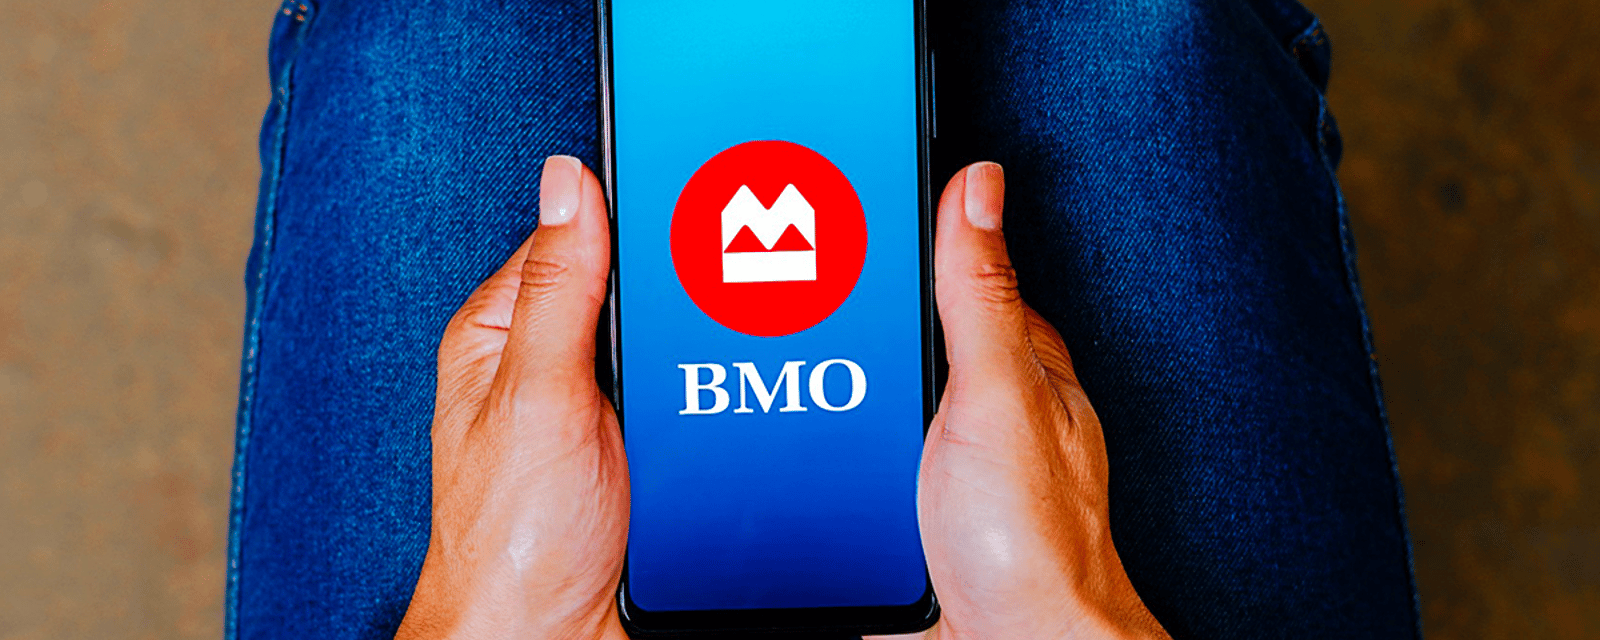 Une centaine de clients de la BMO perdent 1,5 million de dollars